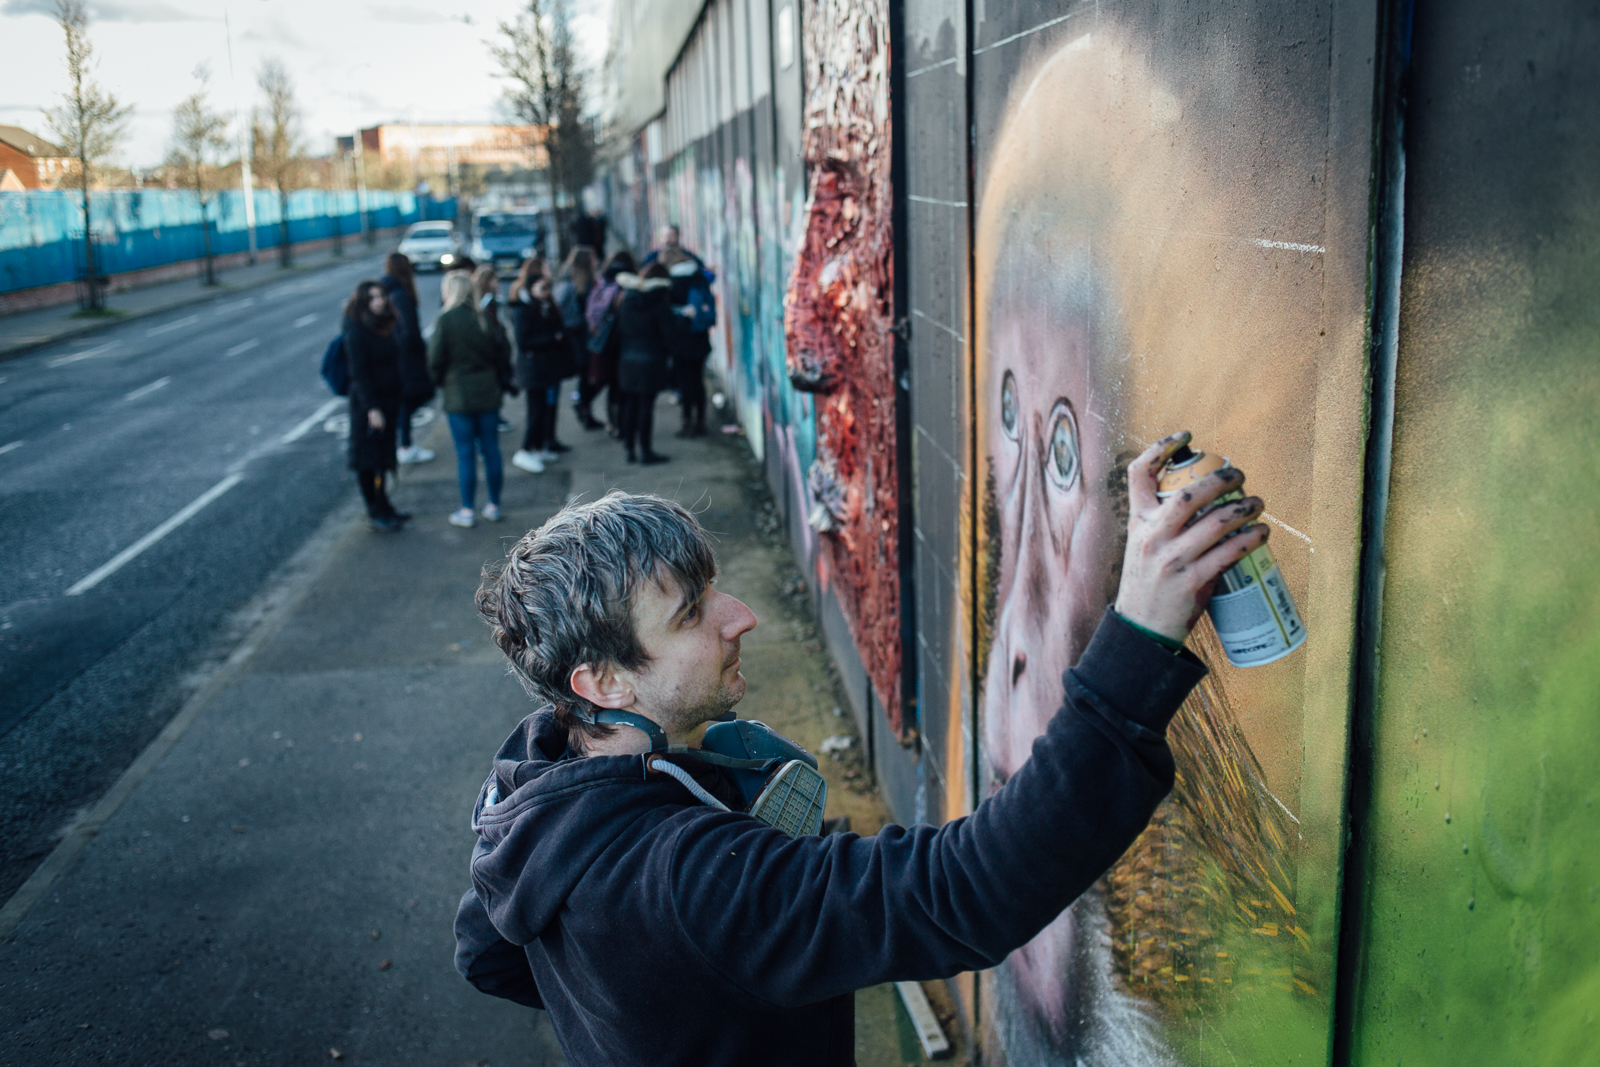 Belfast, le 24 Février 2017. La ville comporte encore de nombreux murs de séparation entre quartiers protestants et catholiques. Emic est street artist, et revendique comme un acte militant de ne pas peindre à propos des "troubles".